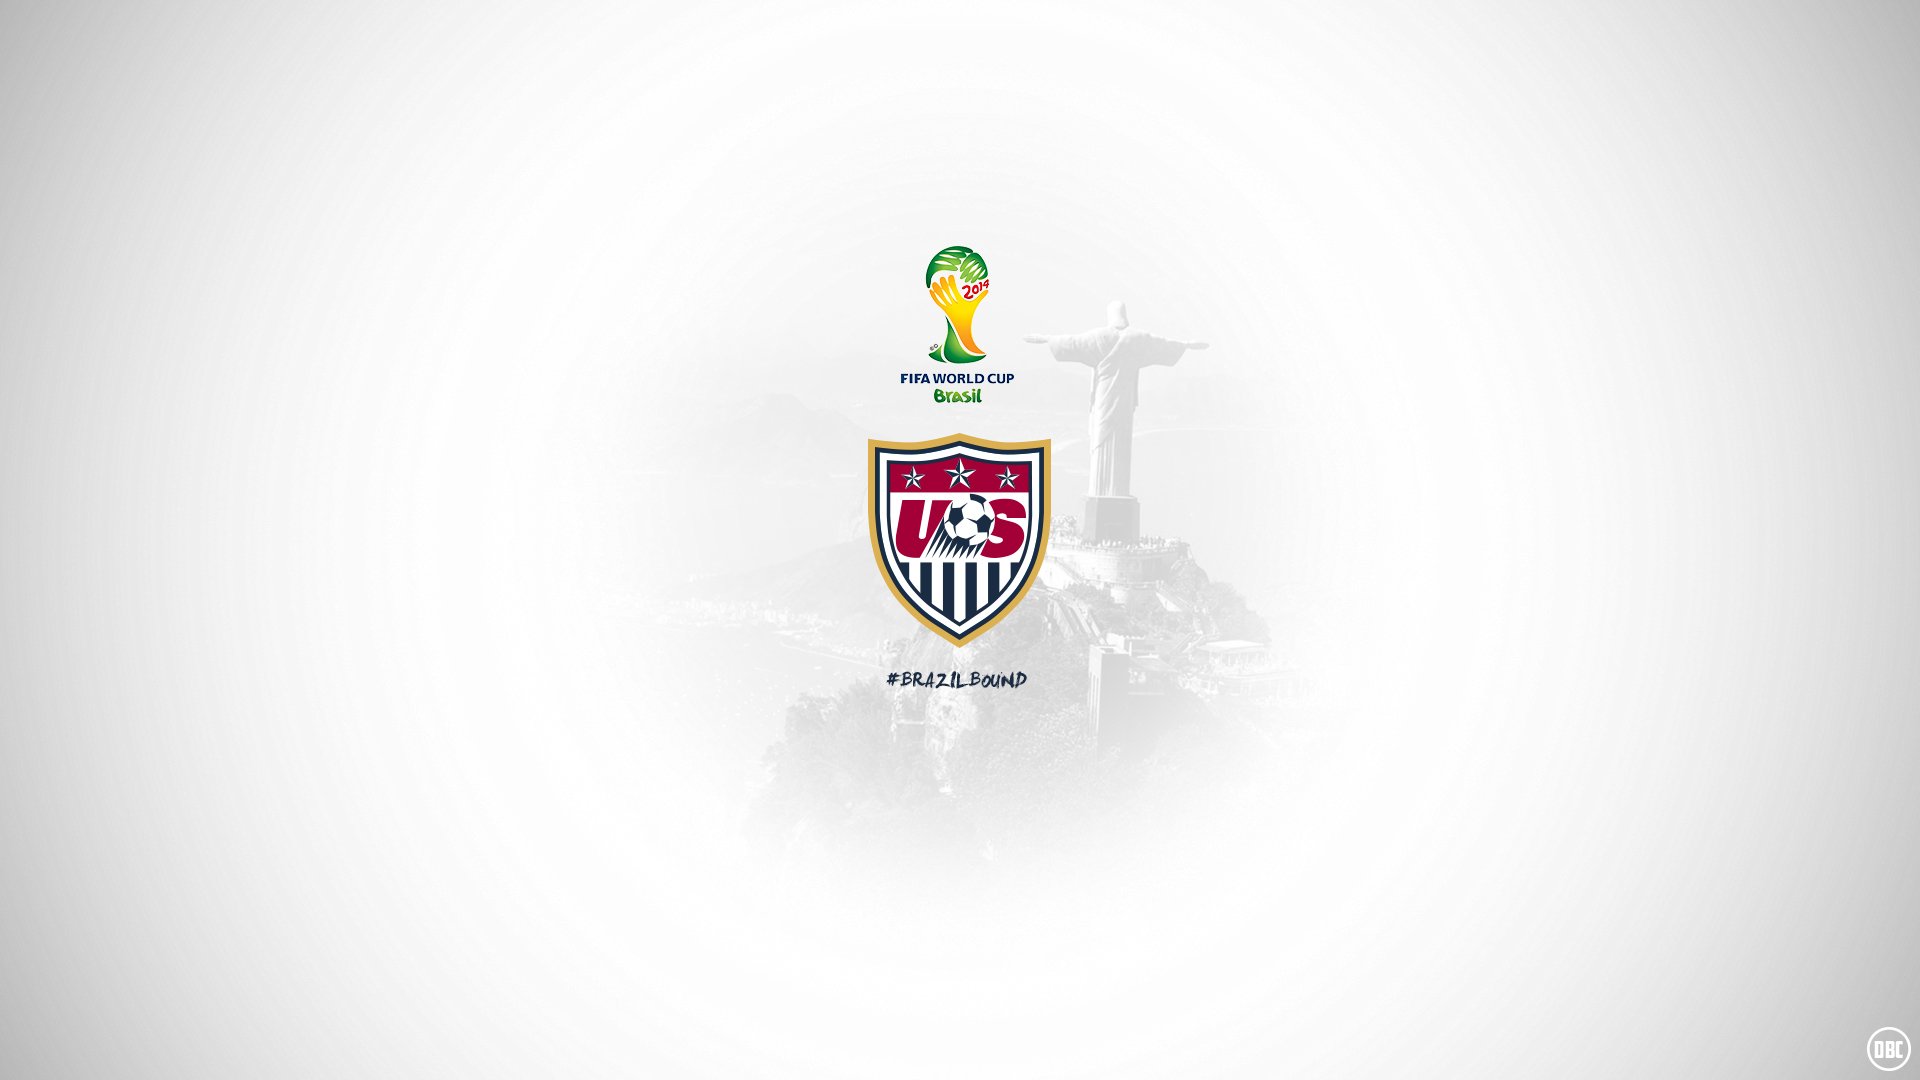 USA Soccer Brazil Bound by Chadski51 on